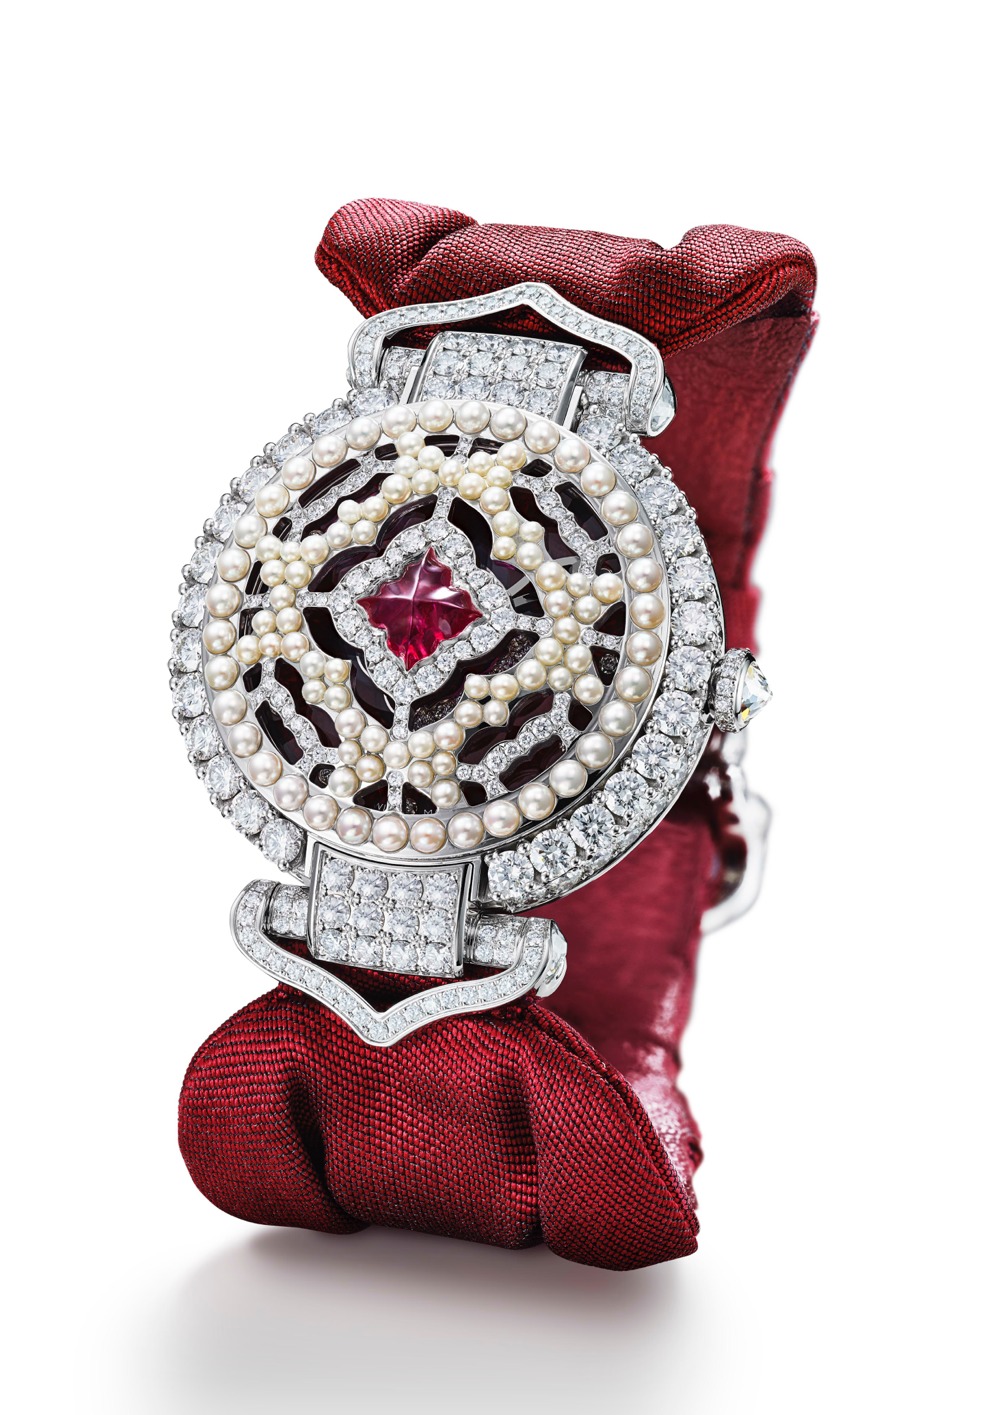 imagen 3 de Imperiale The Empress Watch, el reloj joya propio de una zarina de Rusia.